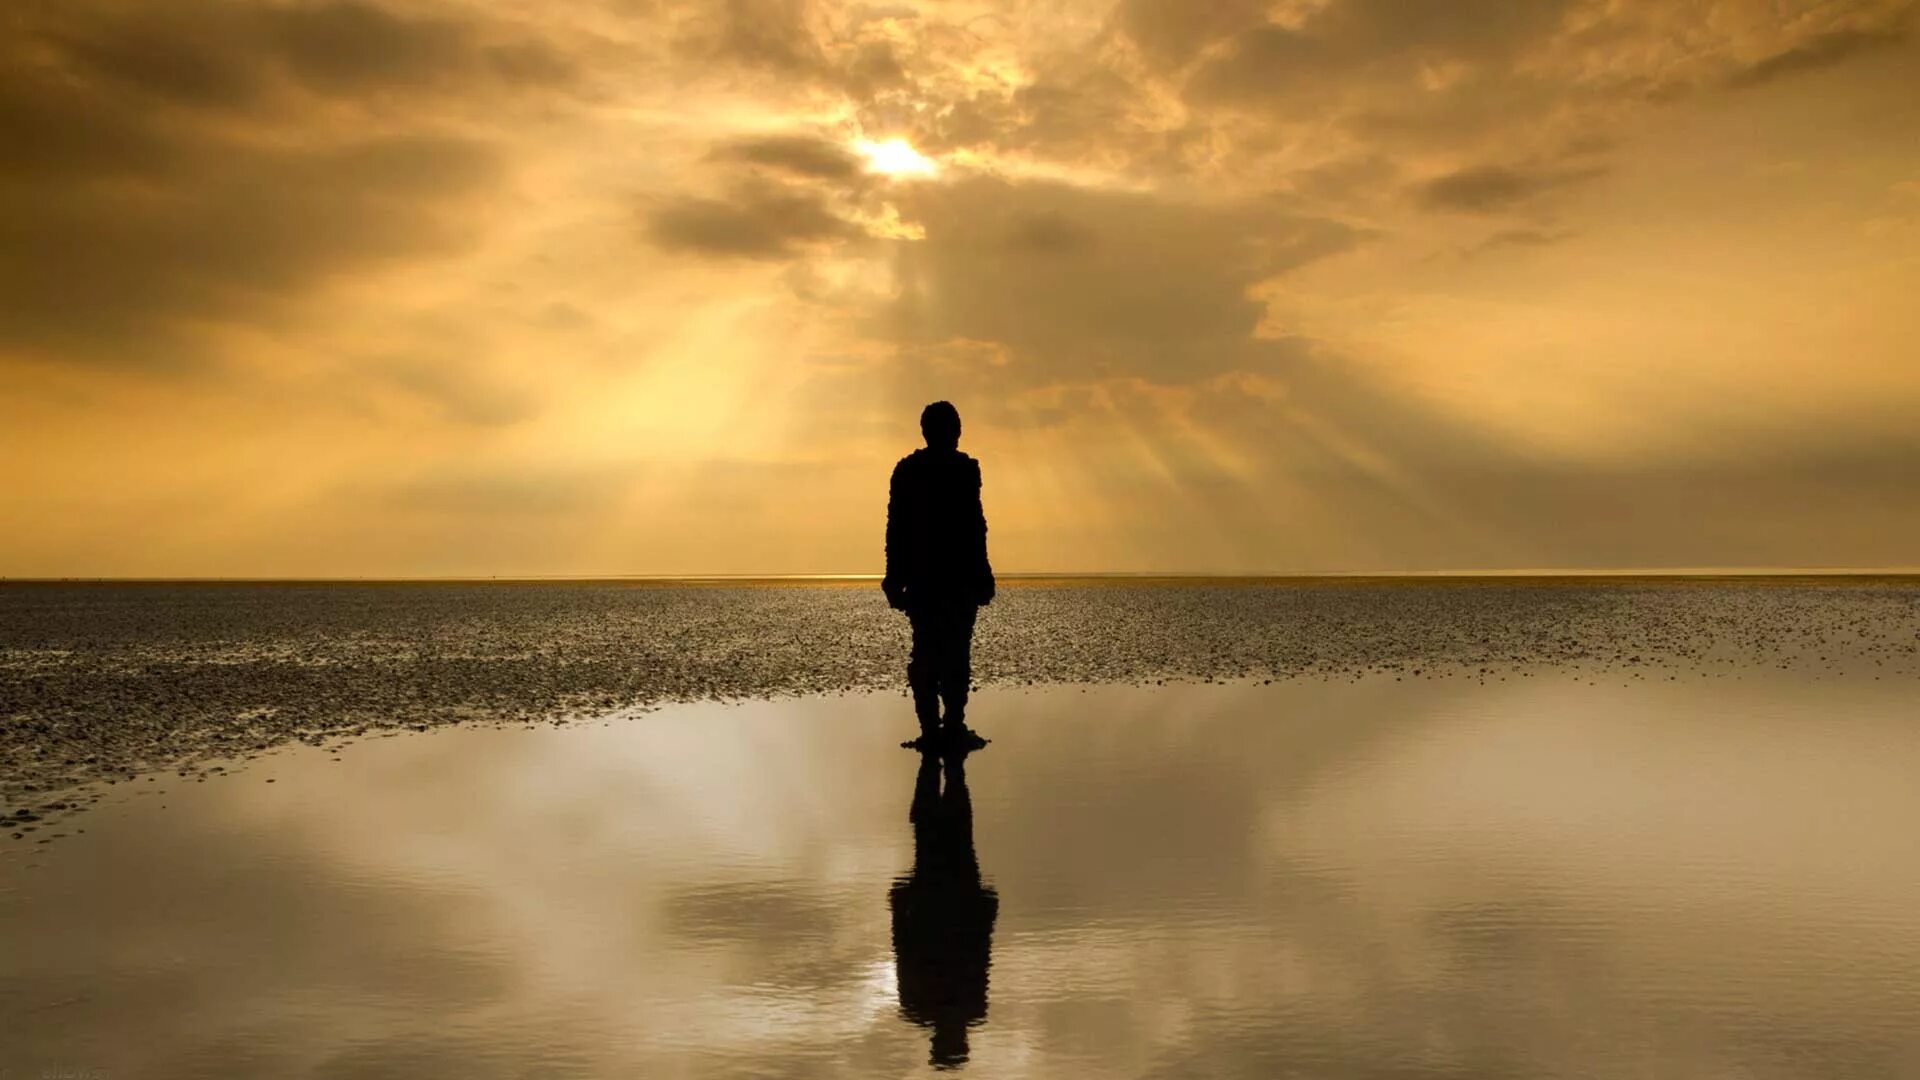 Жизнь вдали. Одинокий человек. Одинокая фигура на берегу моря. Одинокий мужчина на берегу. Силуэт уходящего мужчины.